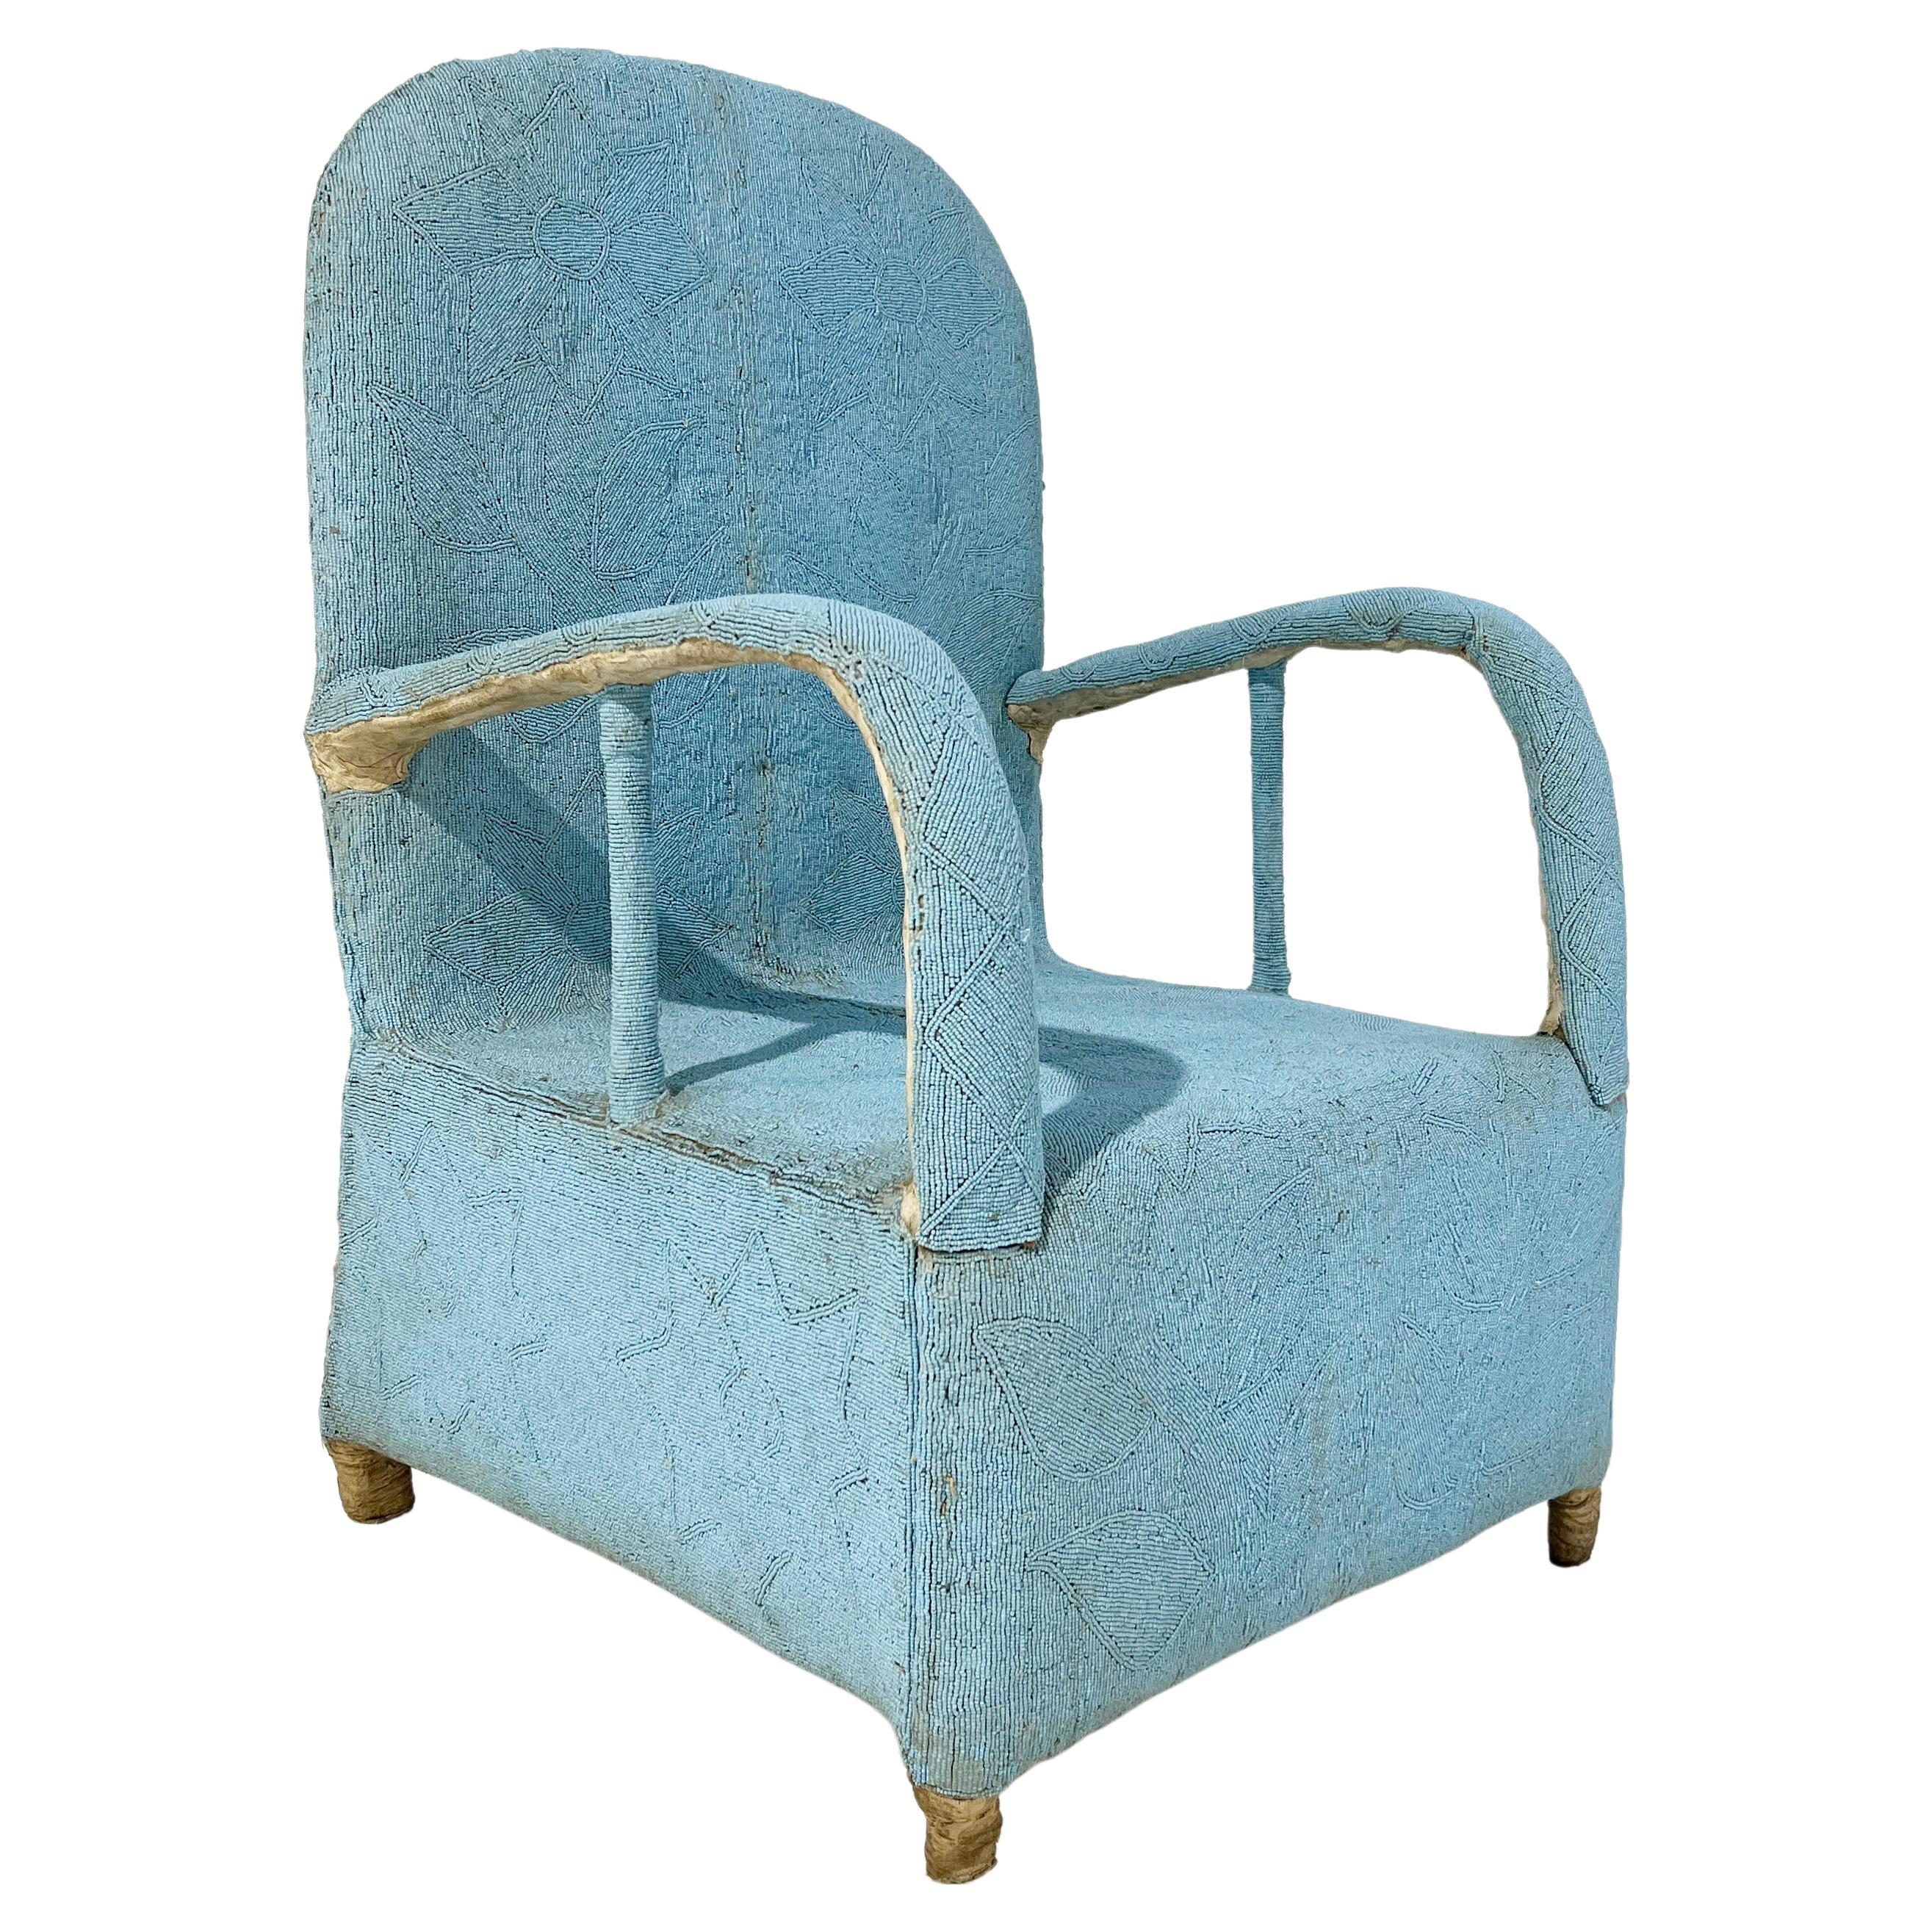 Afrikanischer Yoruba-Stuhl mit Perlenbesatz, mehrfarbig, 2 Stühle verfügbar